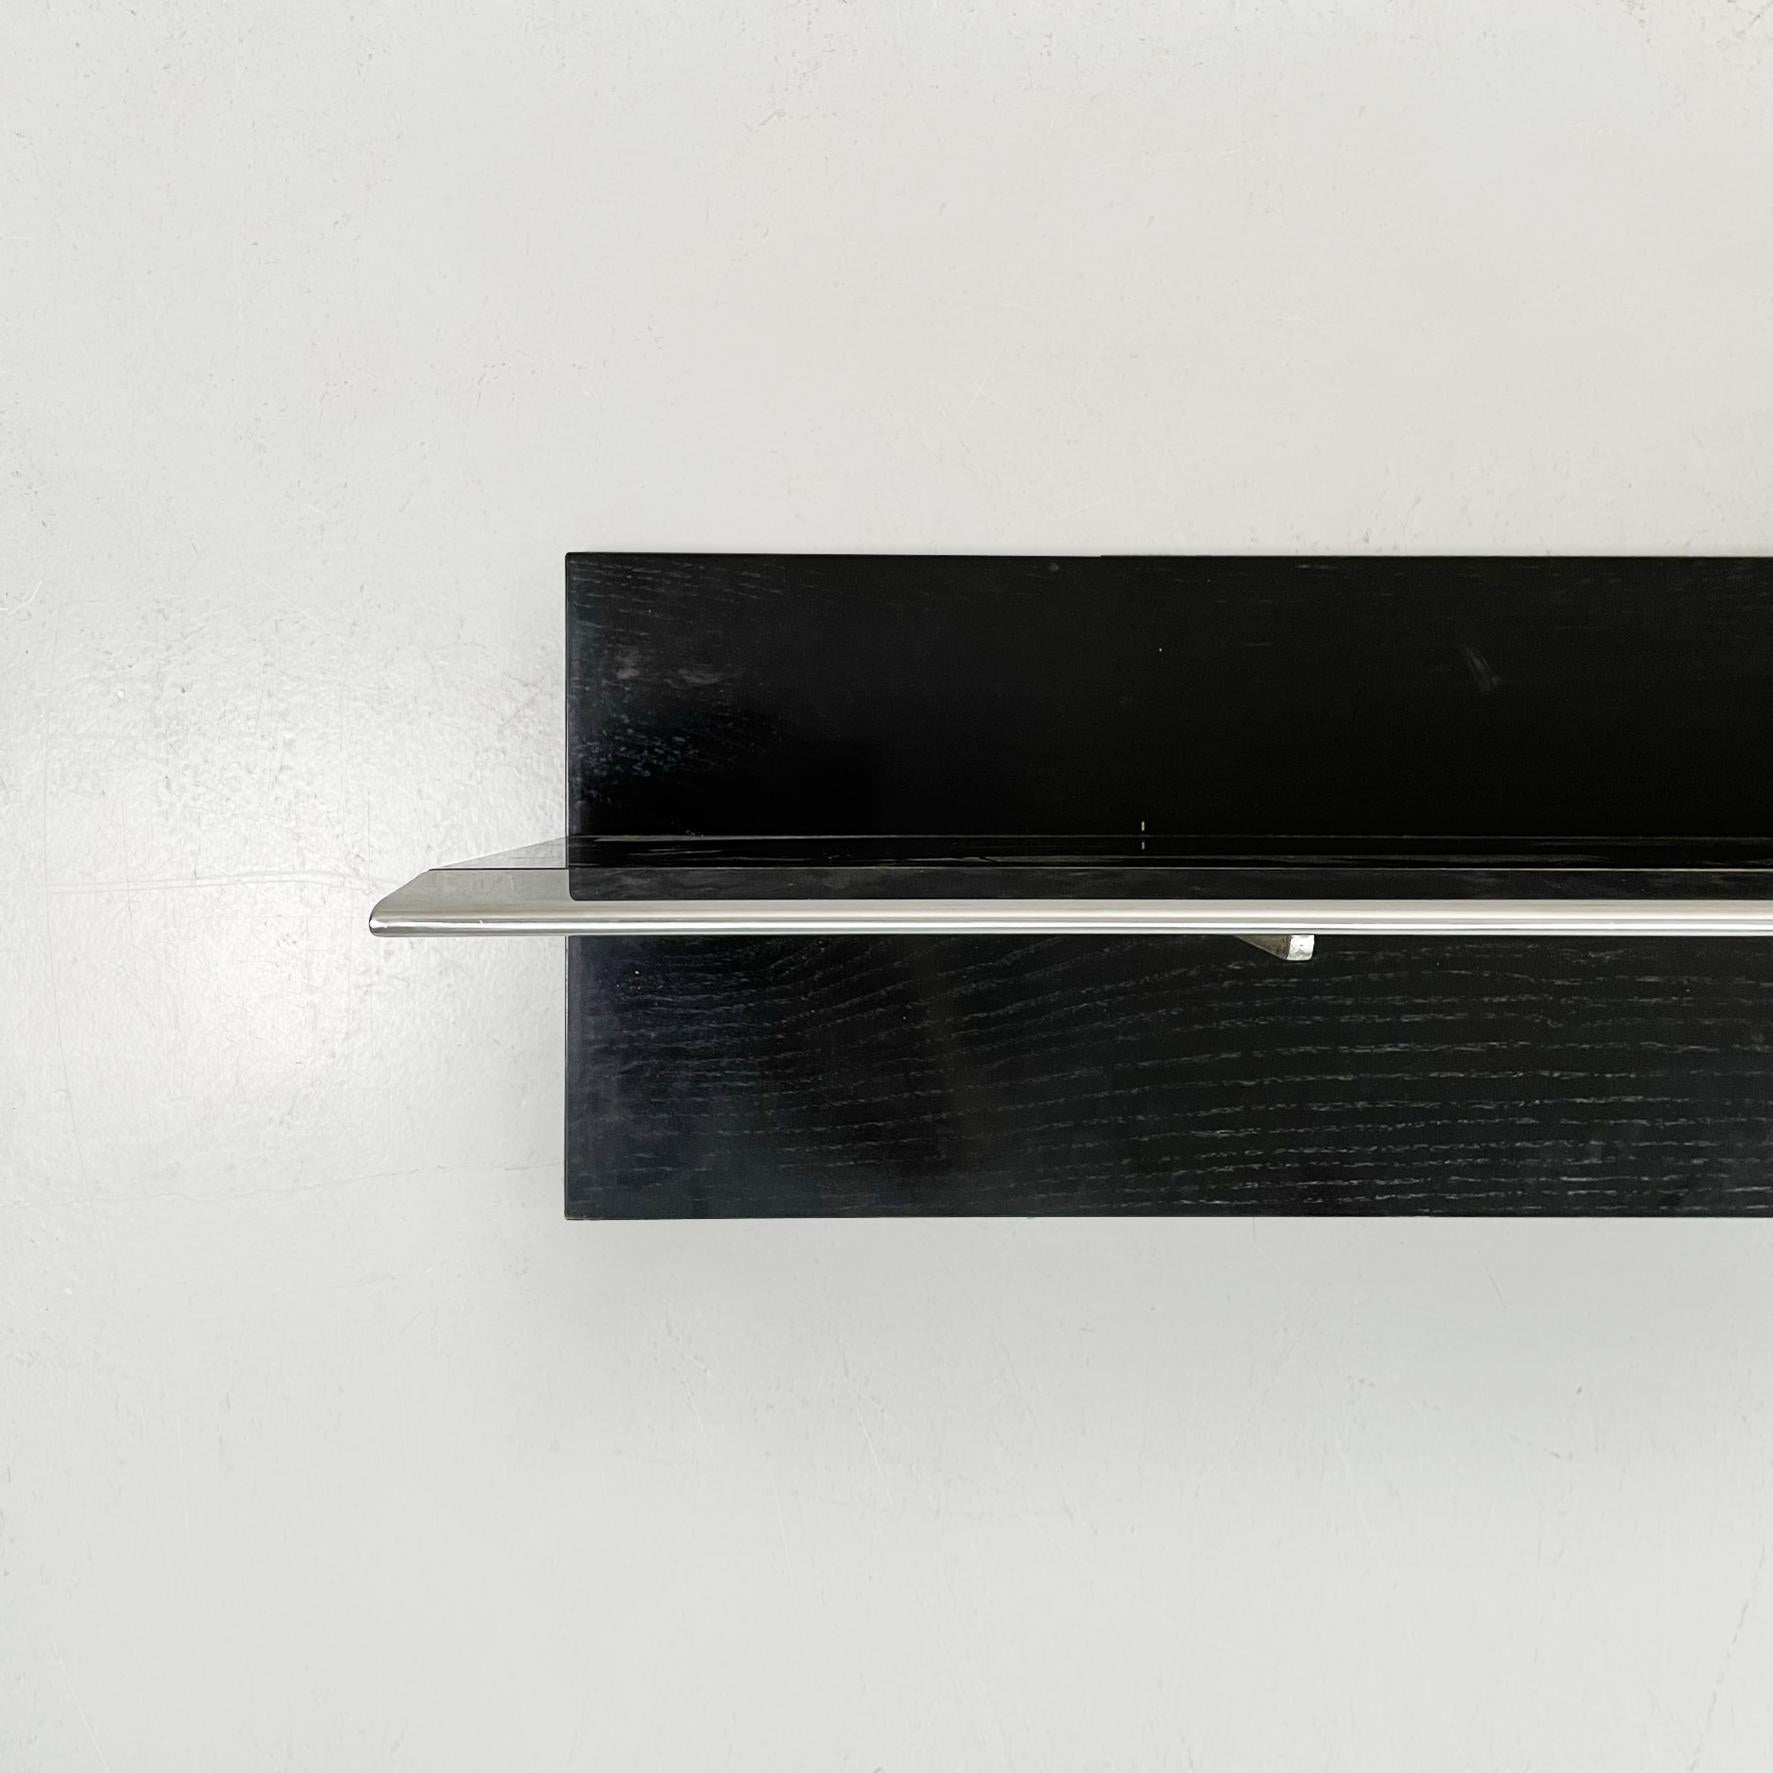 Italienisches modernes Regal aus schwarzem Holz und Stahl, 1980er Jahre
Regal mit rechteckiger Platte aus schwarz lackiertem Holz und Stahl. Das Regal hat eine vertikale Achse, auf der die 2 Stahlstützen angebracht sind.

1980s.

Guter Zustand, die